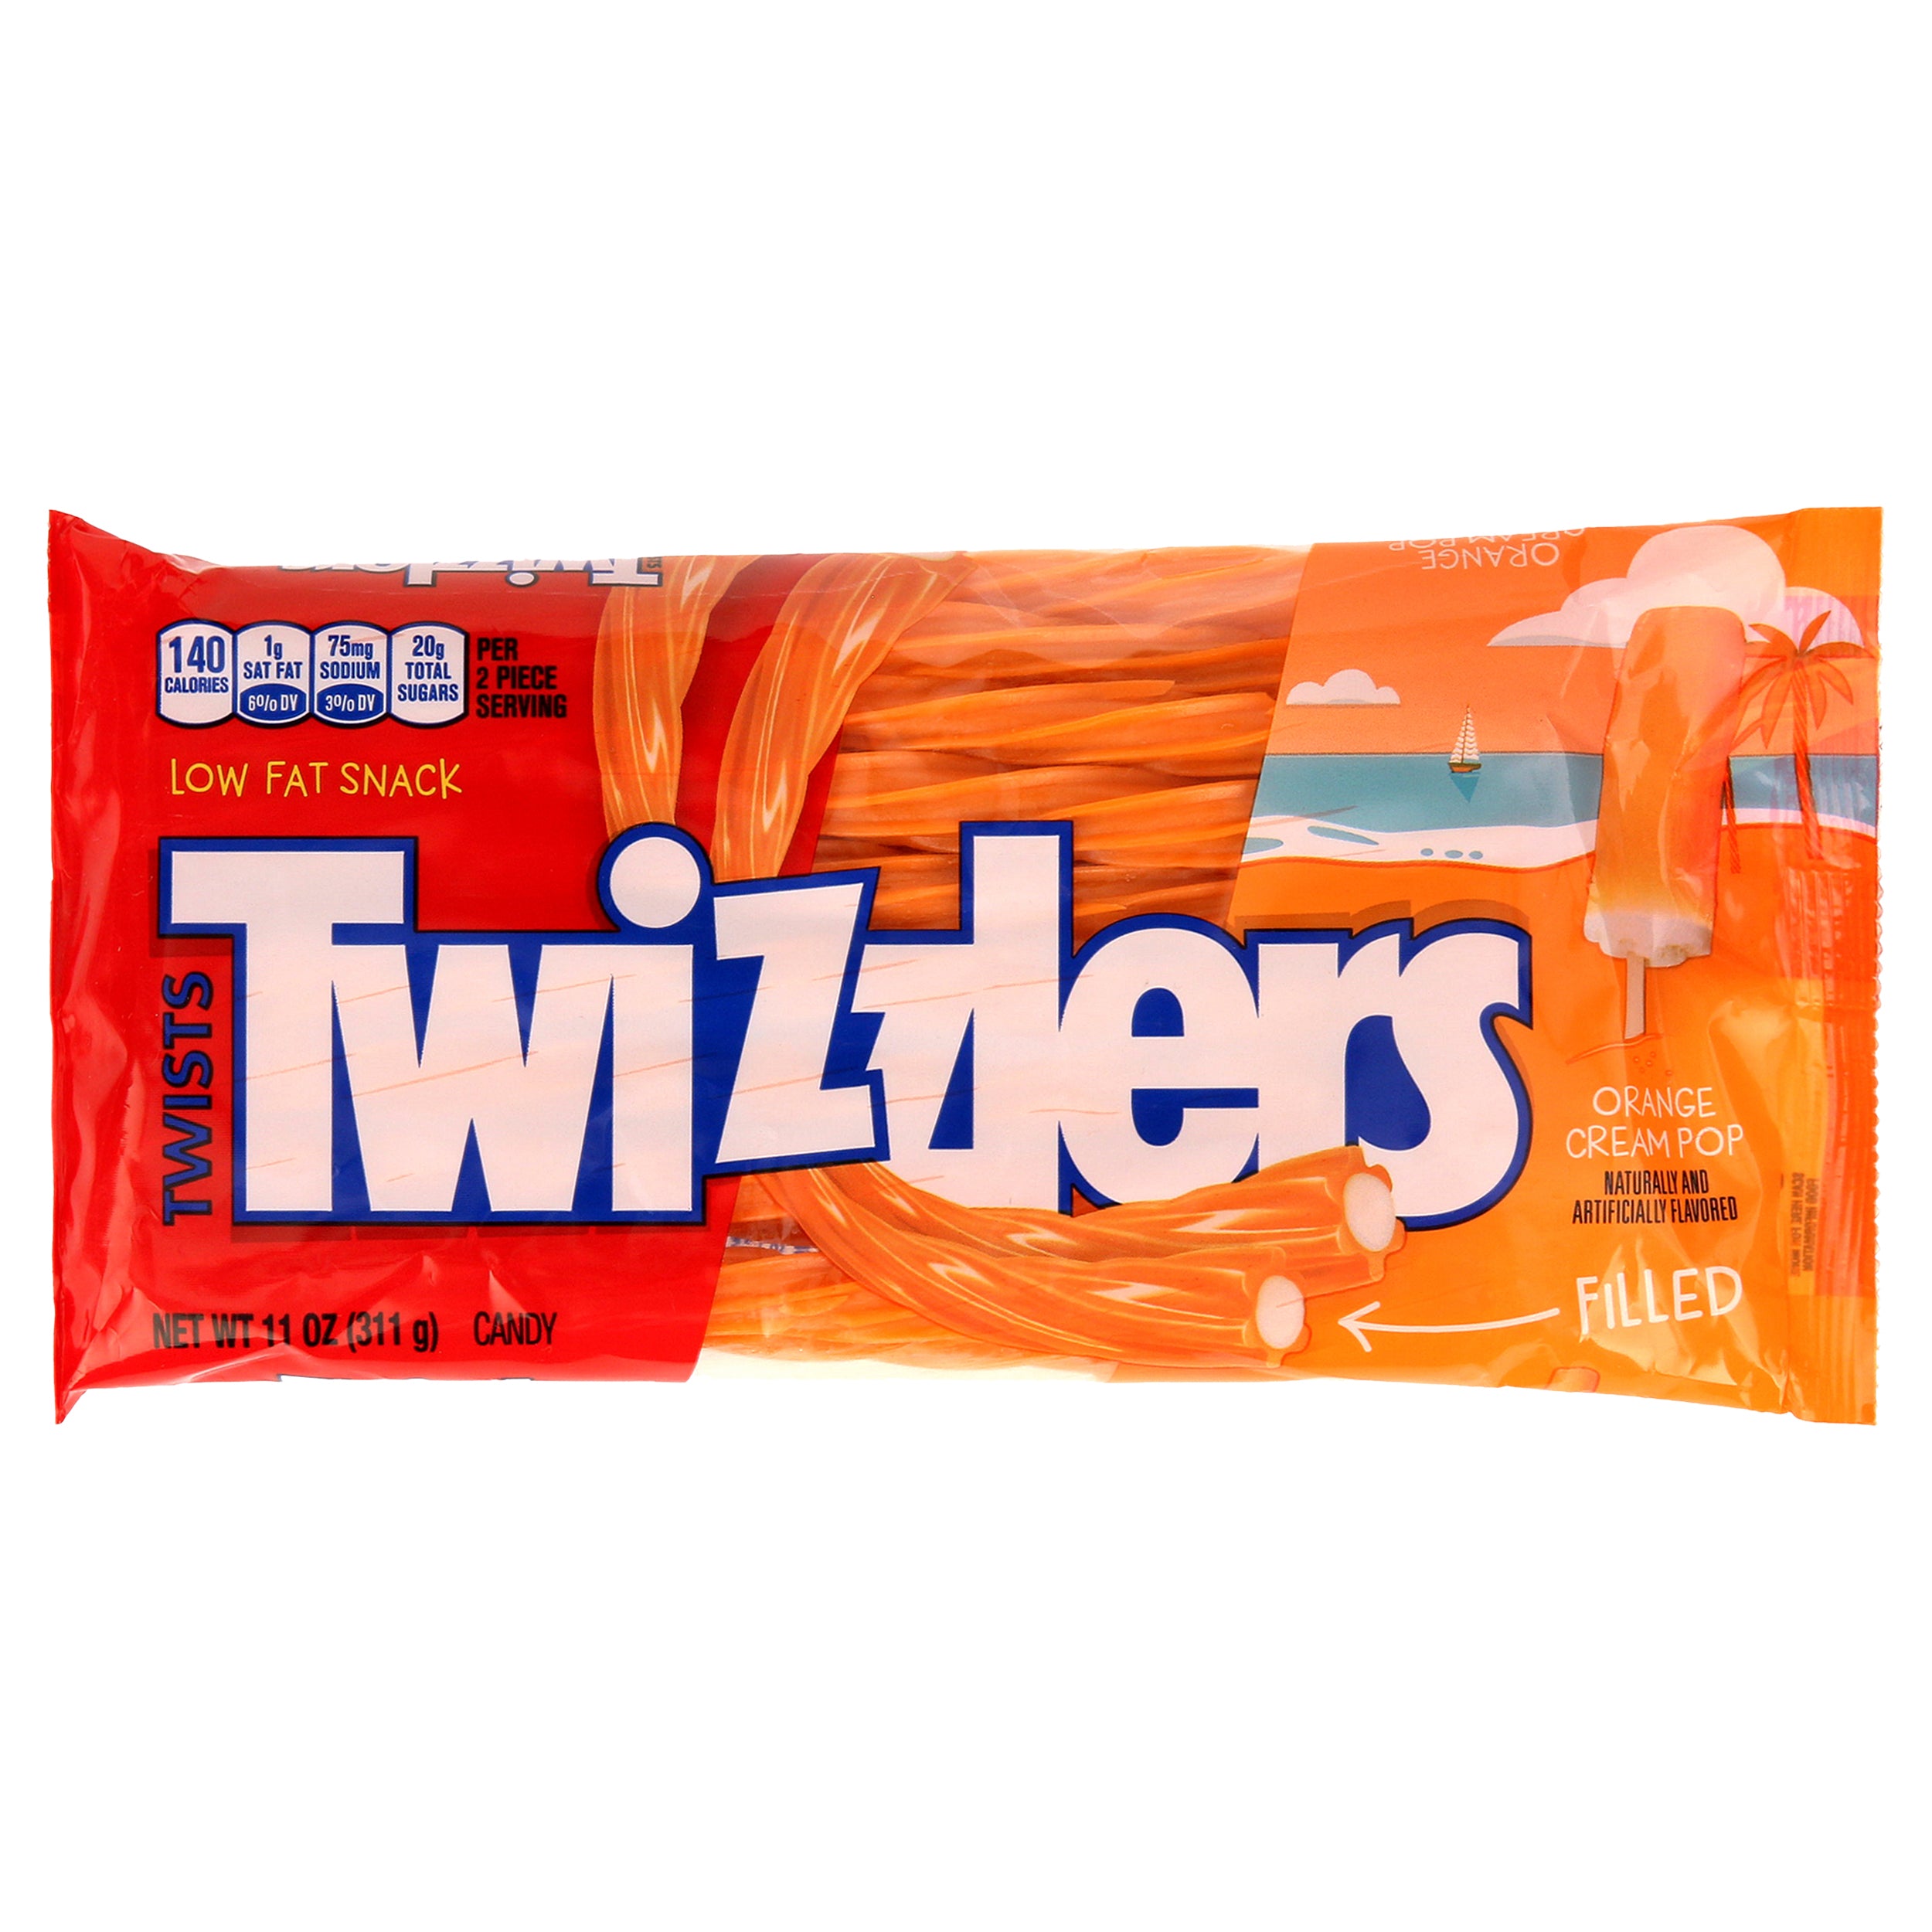 Billede af Twizzlers Orange Cream Pop Filled Twists Mega Bag